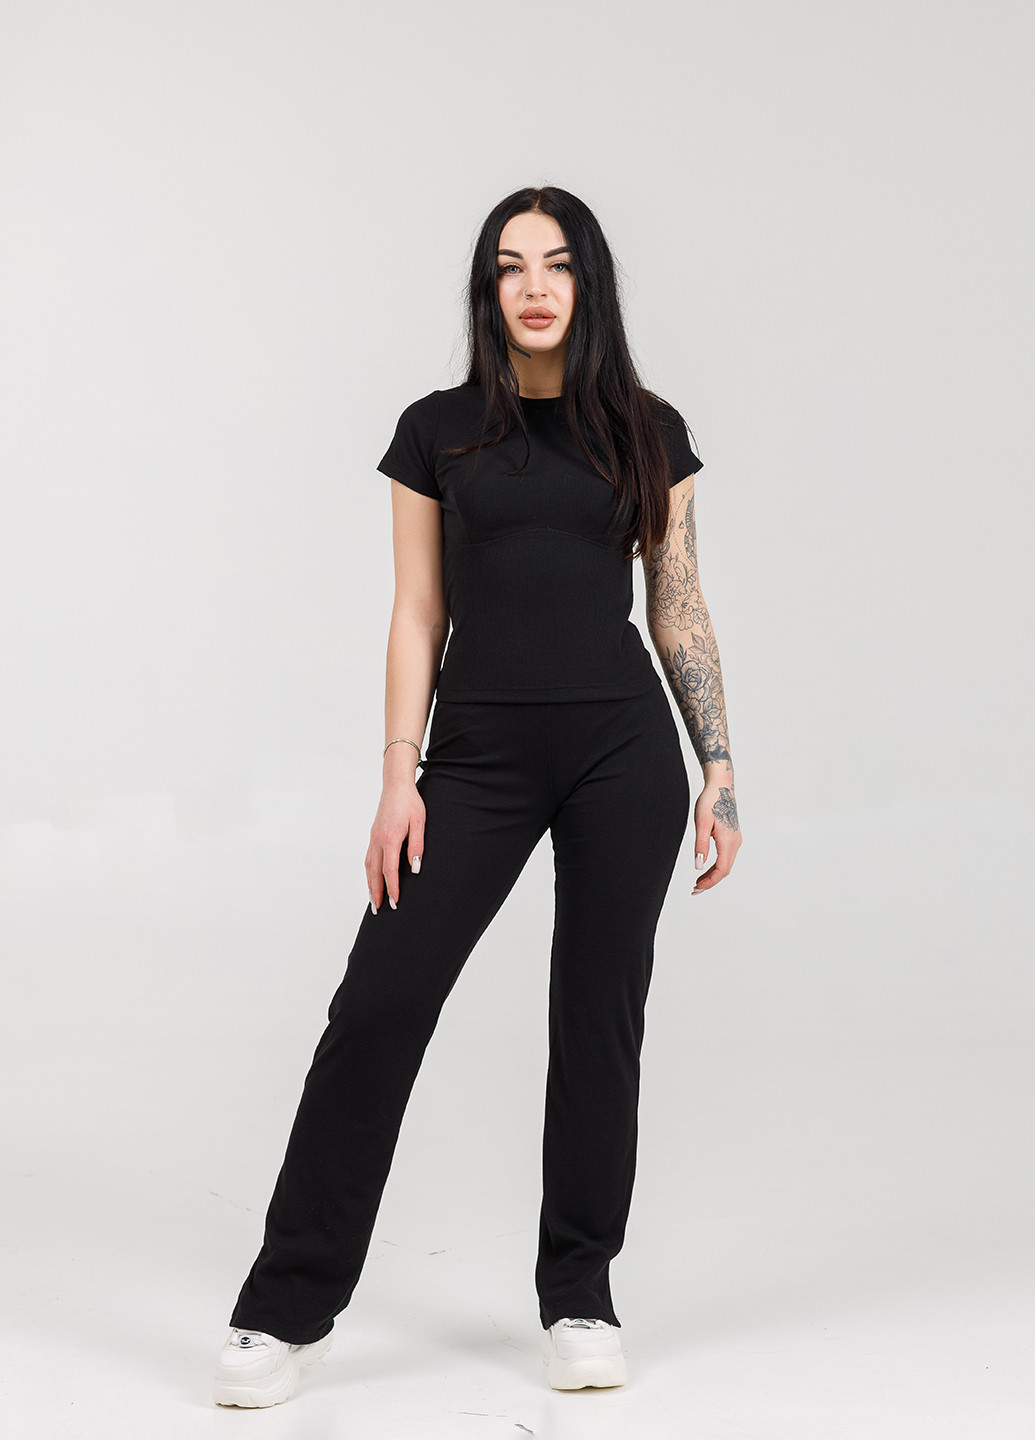 Черная всесезон комплект рубчык (футболка-штаты) черный футболка + брюки SONTSVIT